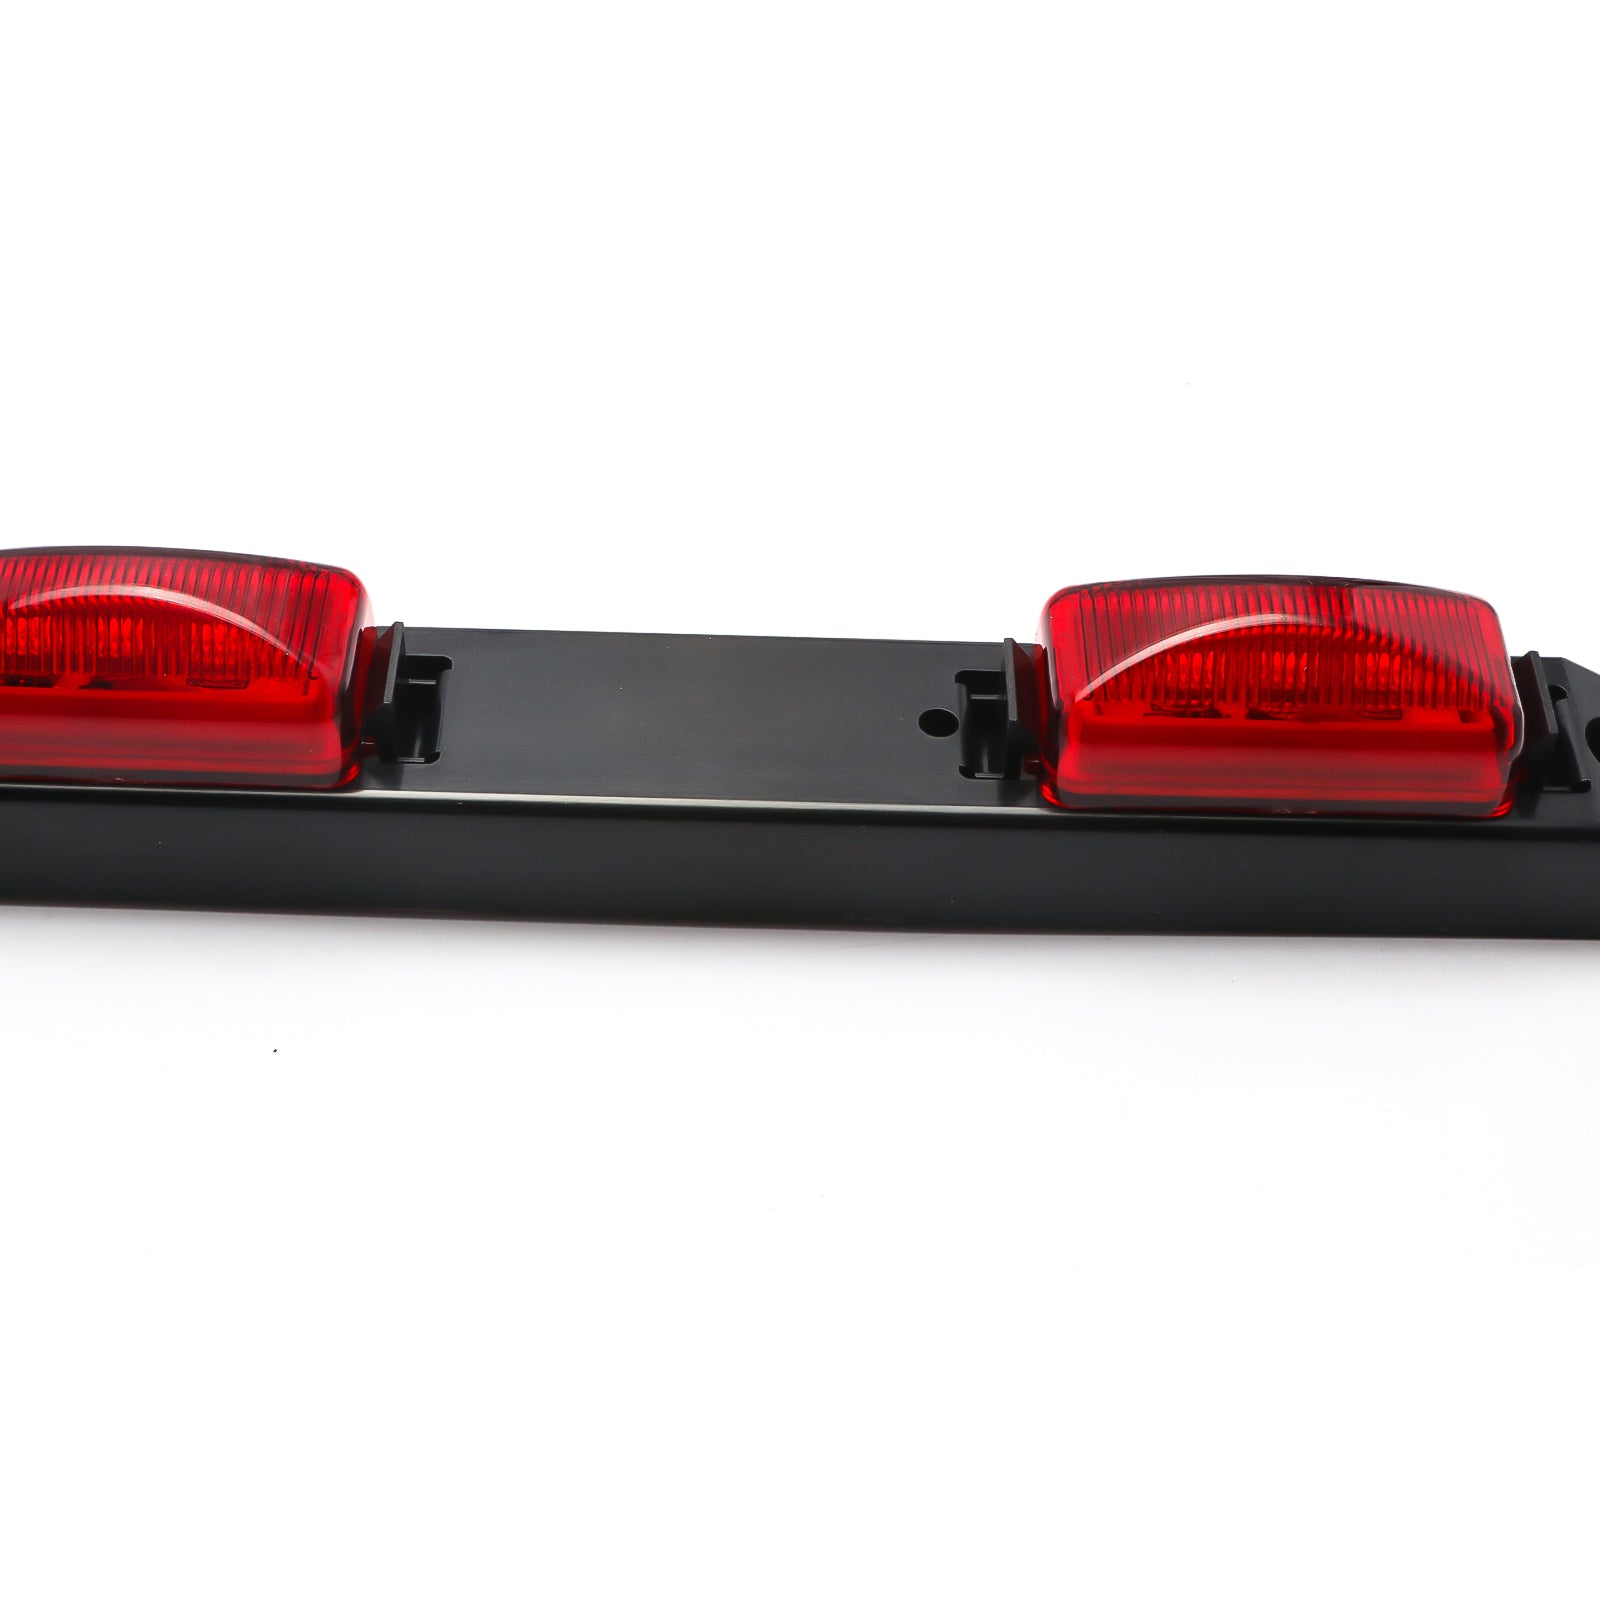 Red Lens 9-LED Truck Rear Tailgate or Trailer LED Light Bar